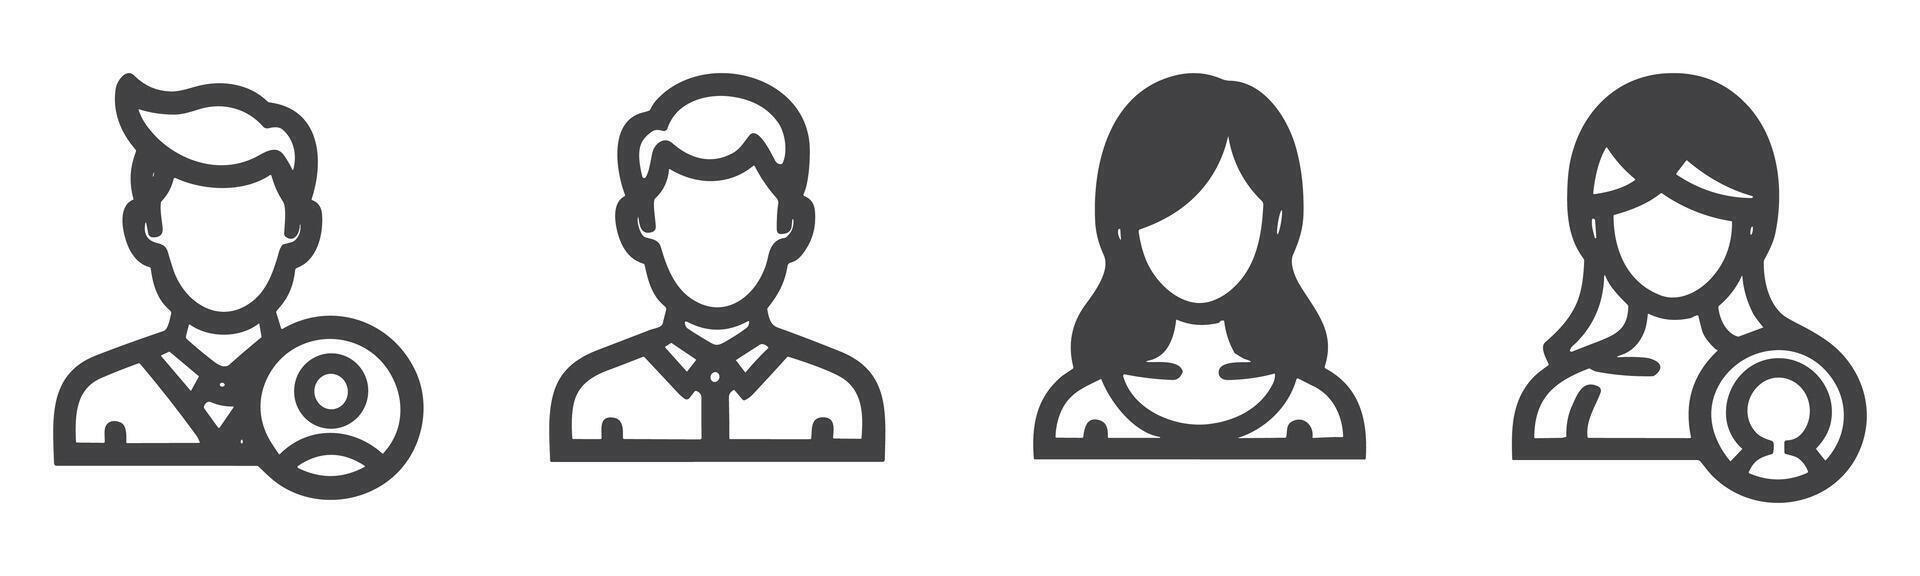 avatar profil ikon uppsättning Inklusive manlig och kvinna. vektor